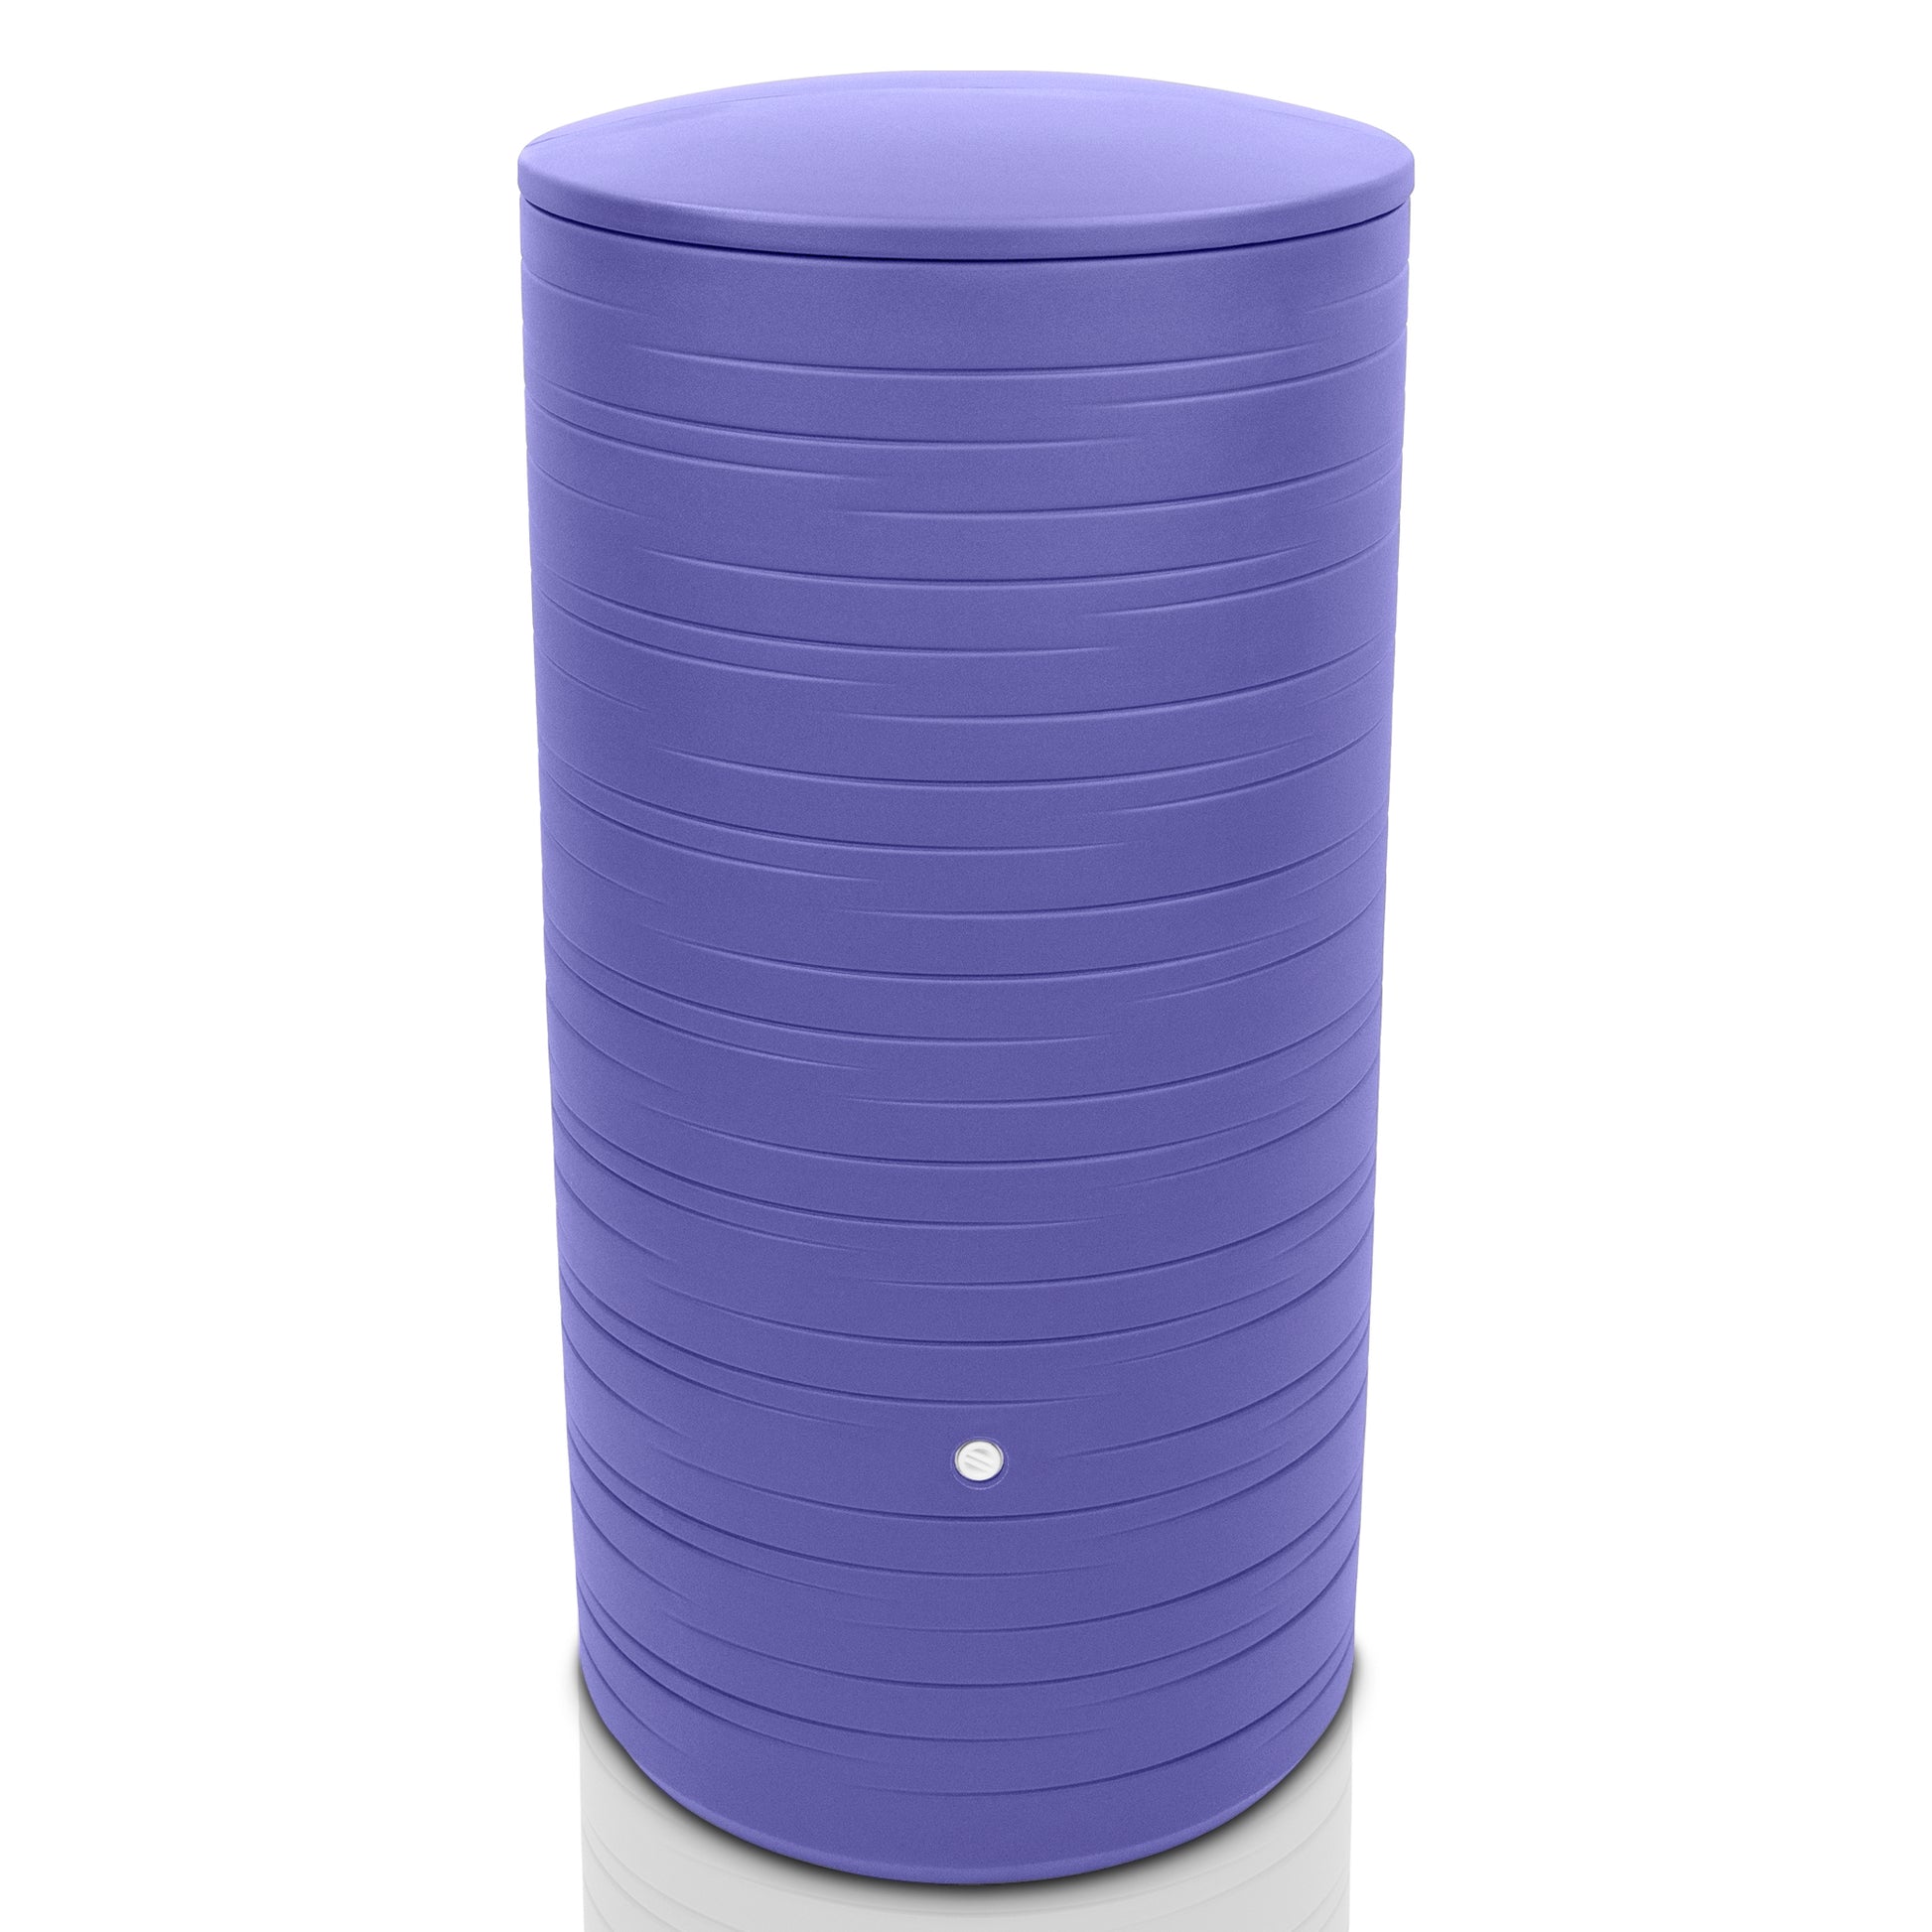 Eine violette, zylindrische, geriffelte YourCasa Regentonne auf weißem Hintergrund.